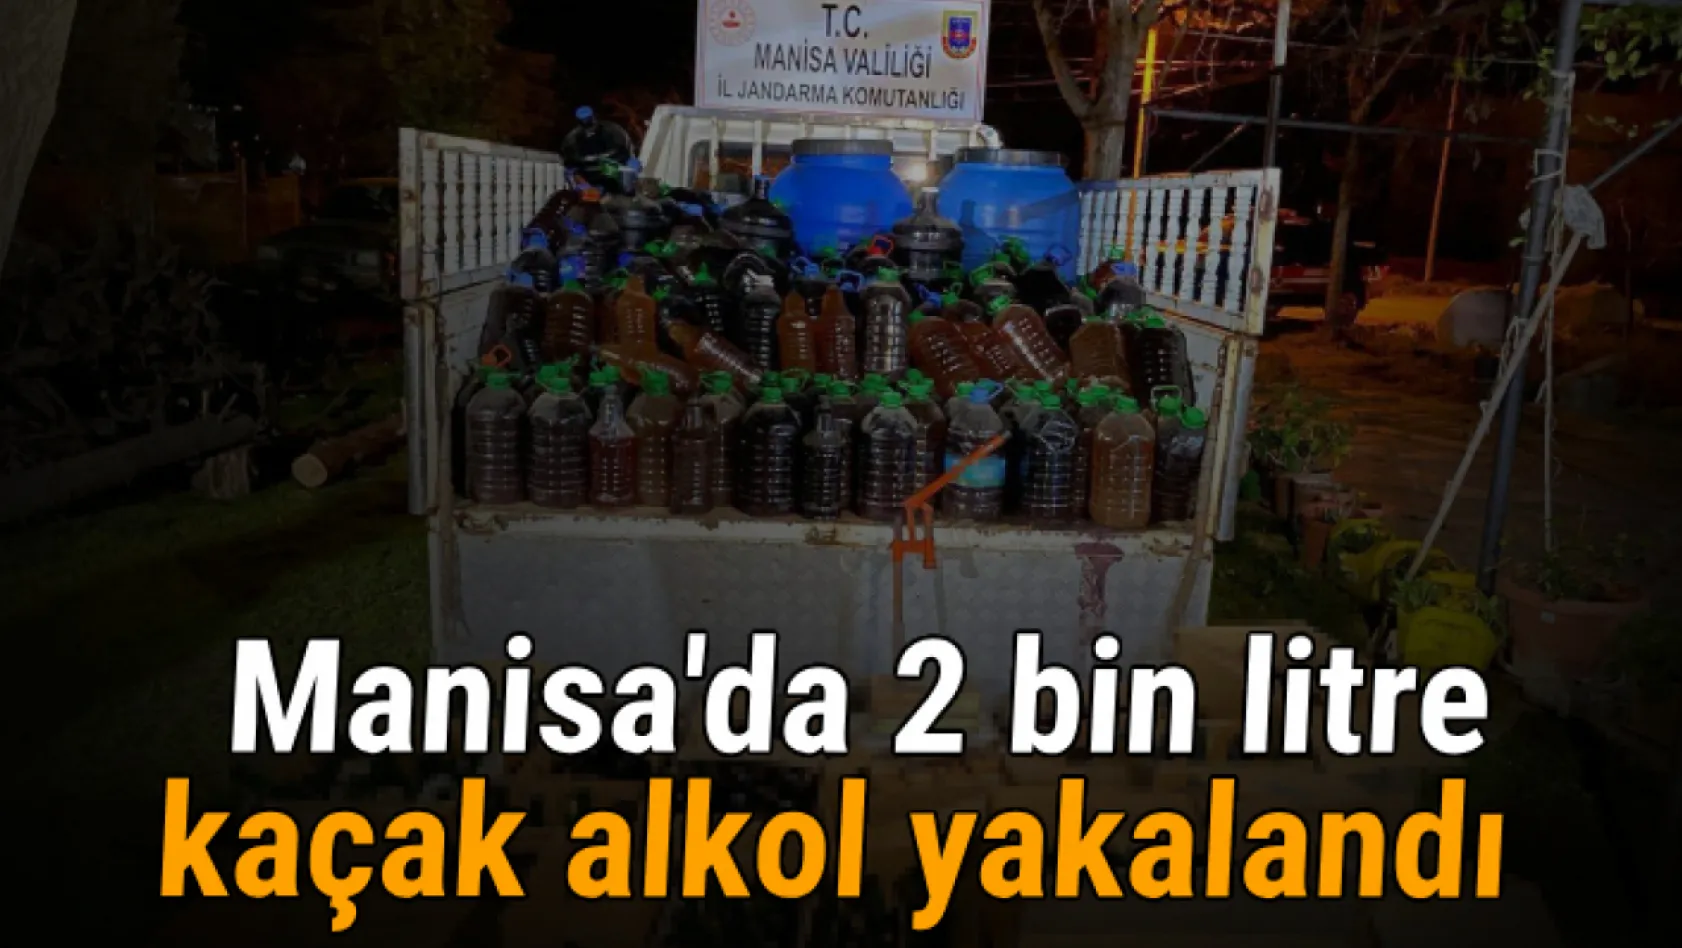 Manisa'da 2 bin litre kaçak alkol yakalandı